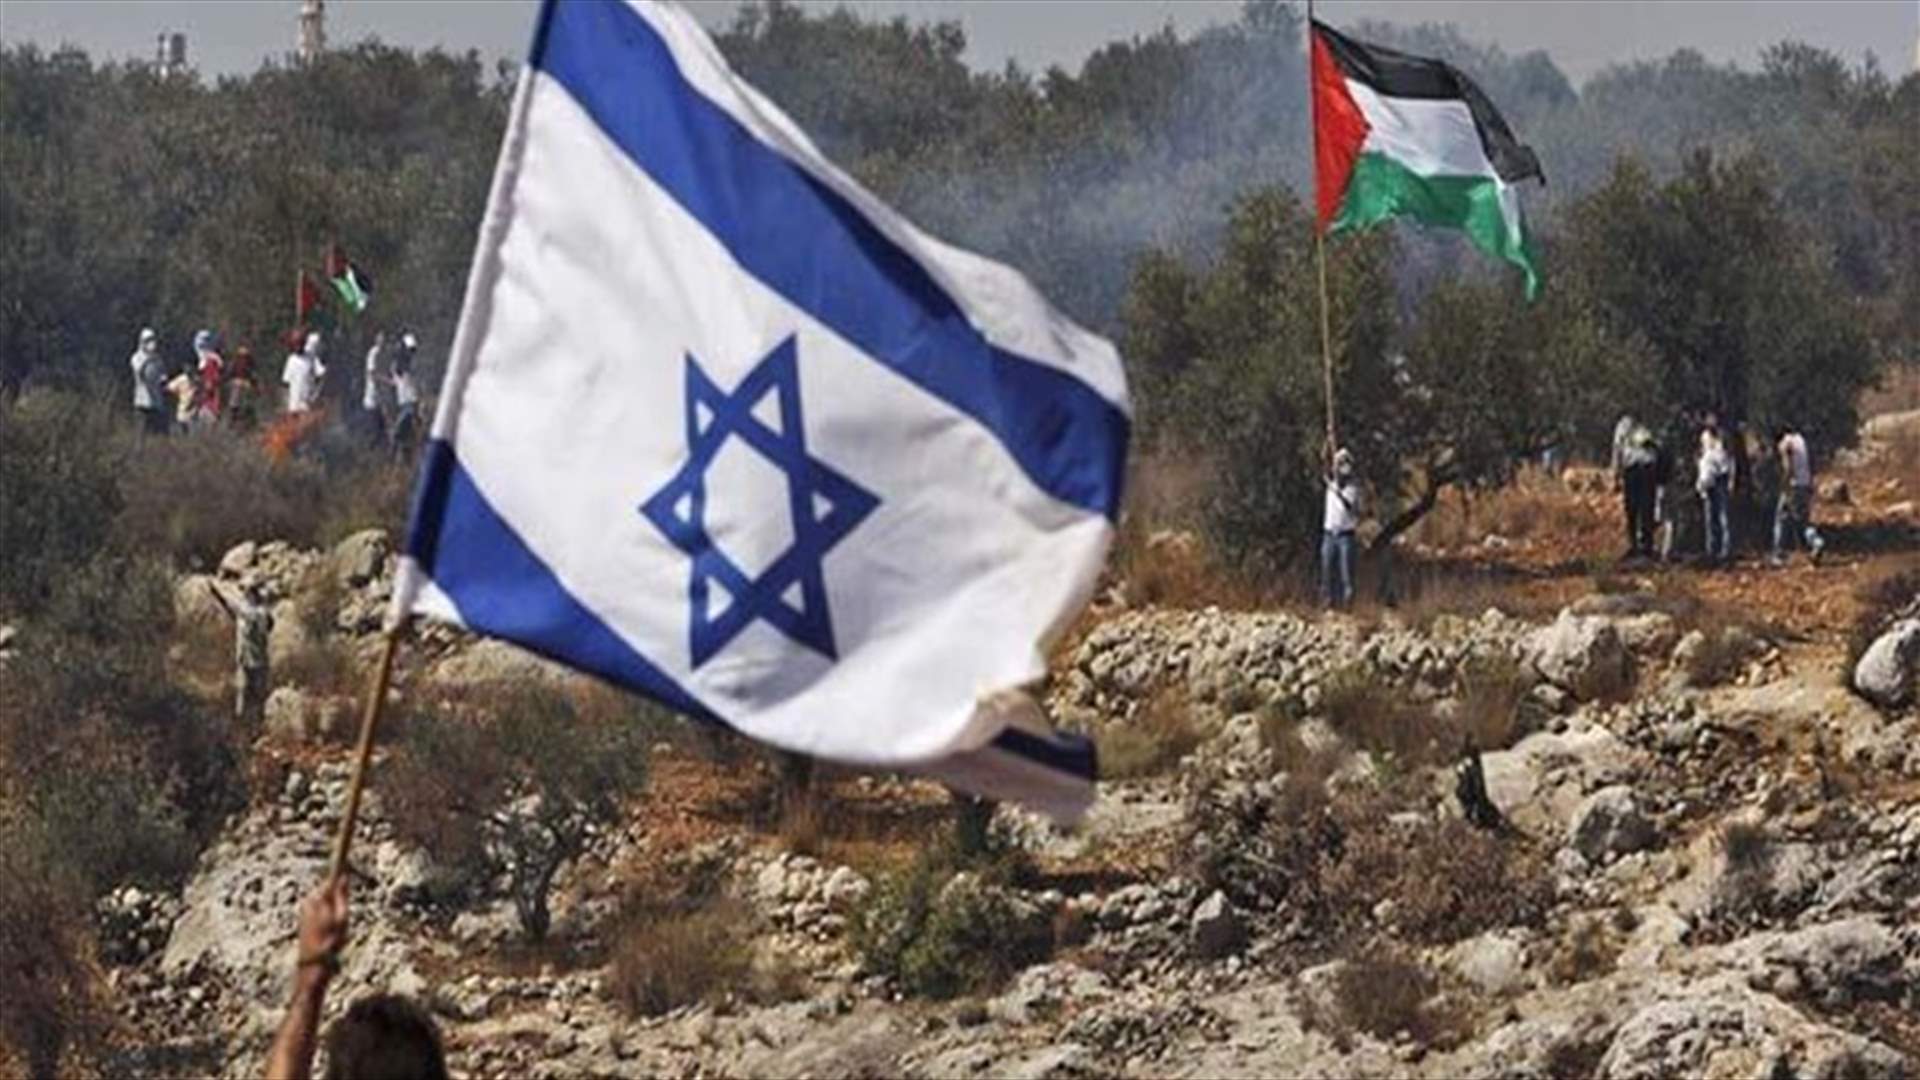 زعيم حزب العمل الإسرائيلي يقترح الاحتفاظ بالمستوطنات في اتفاق سلام مع الفلسطينيين